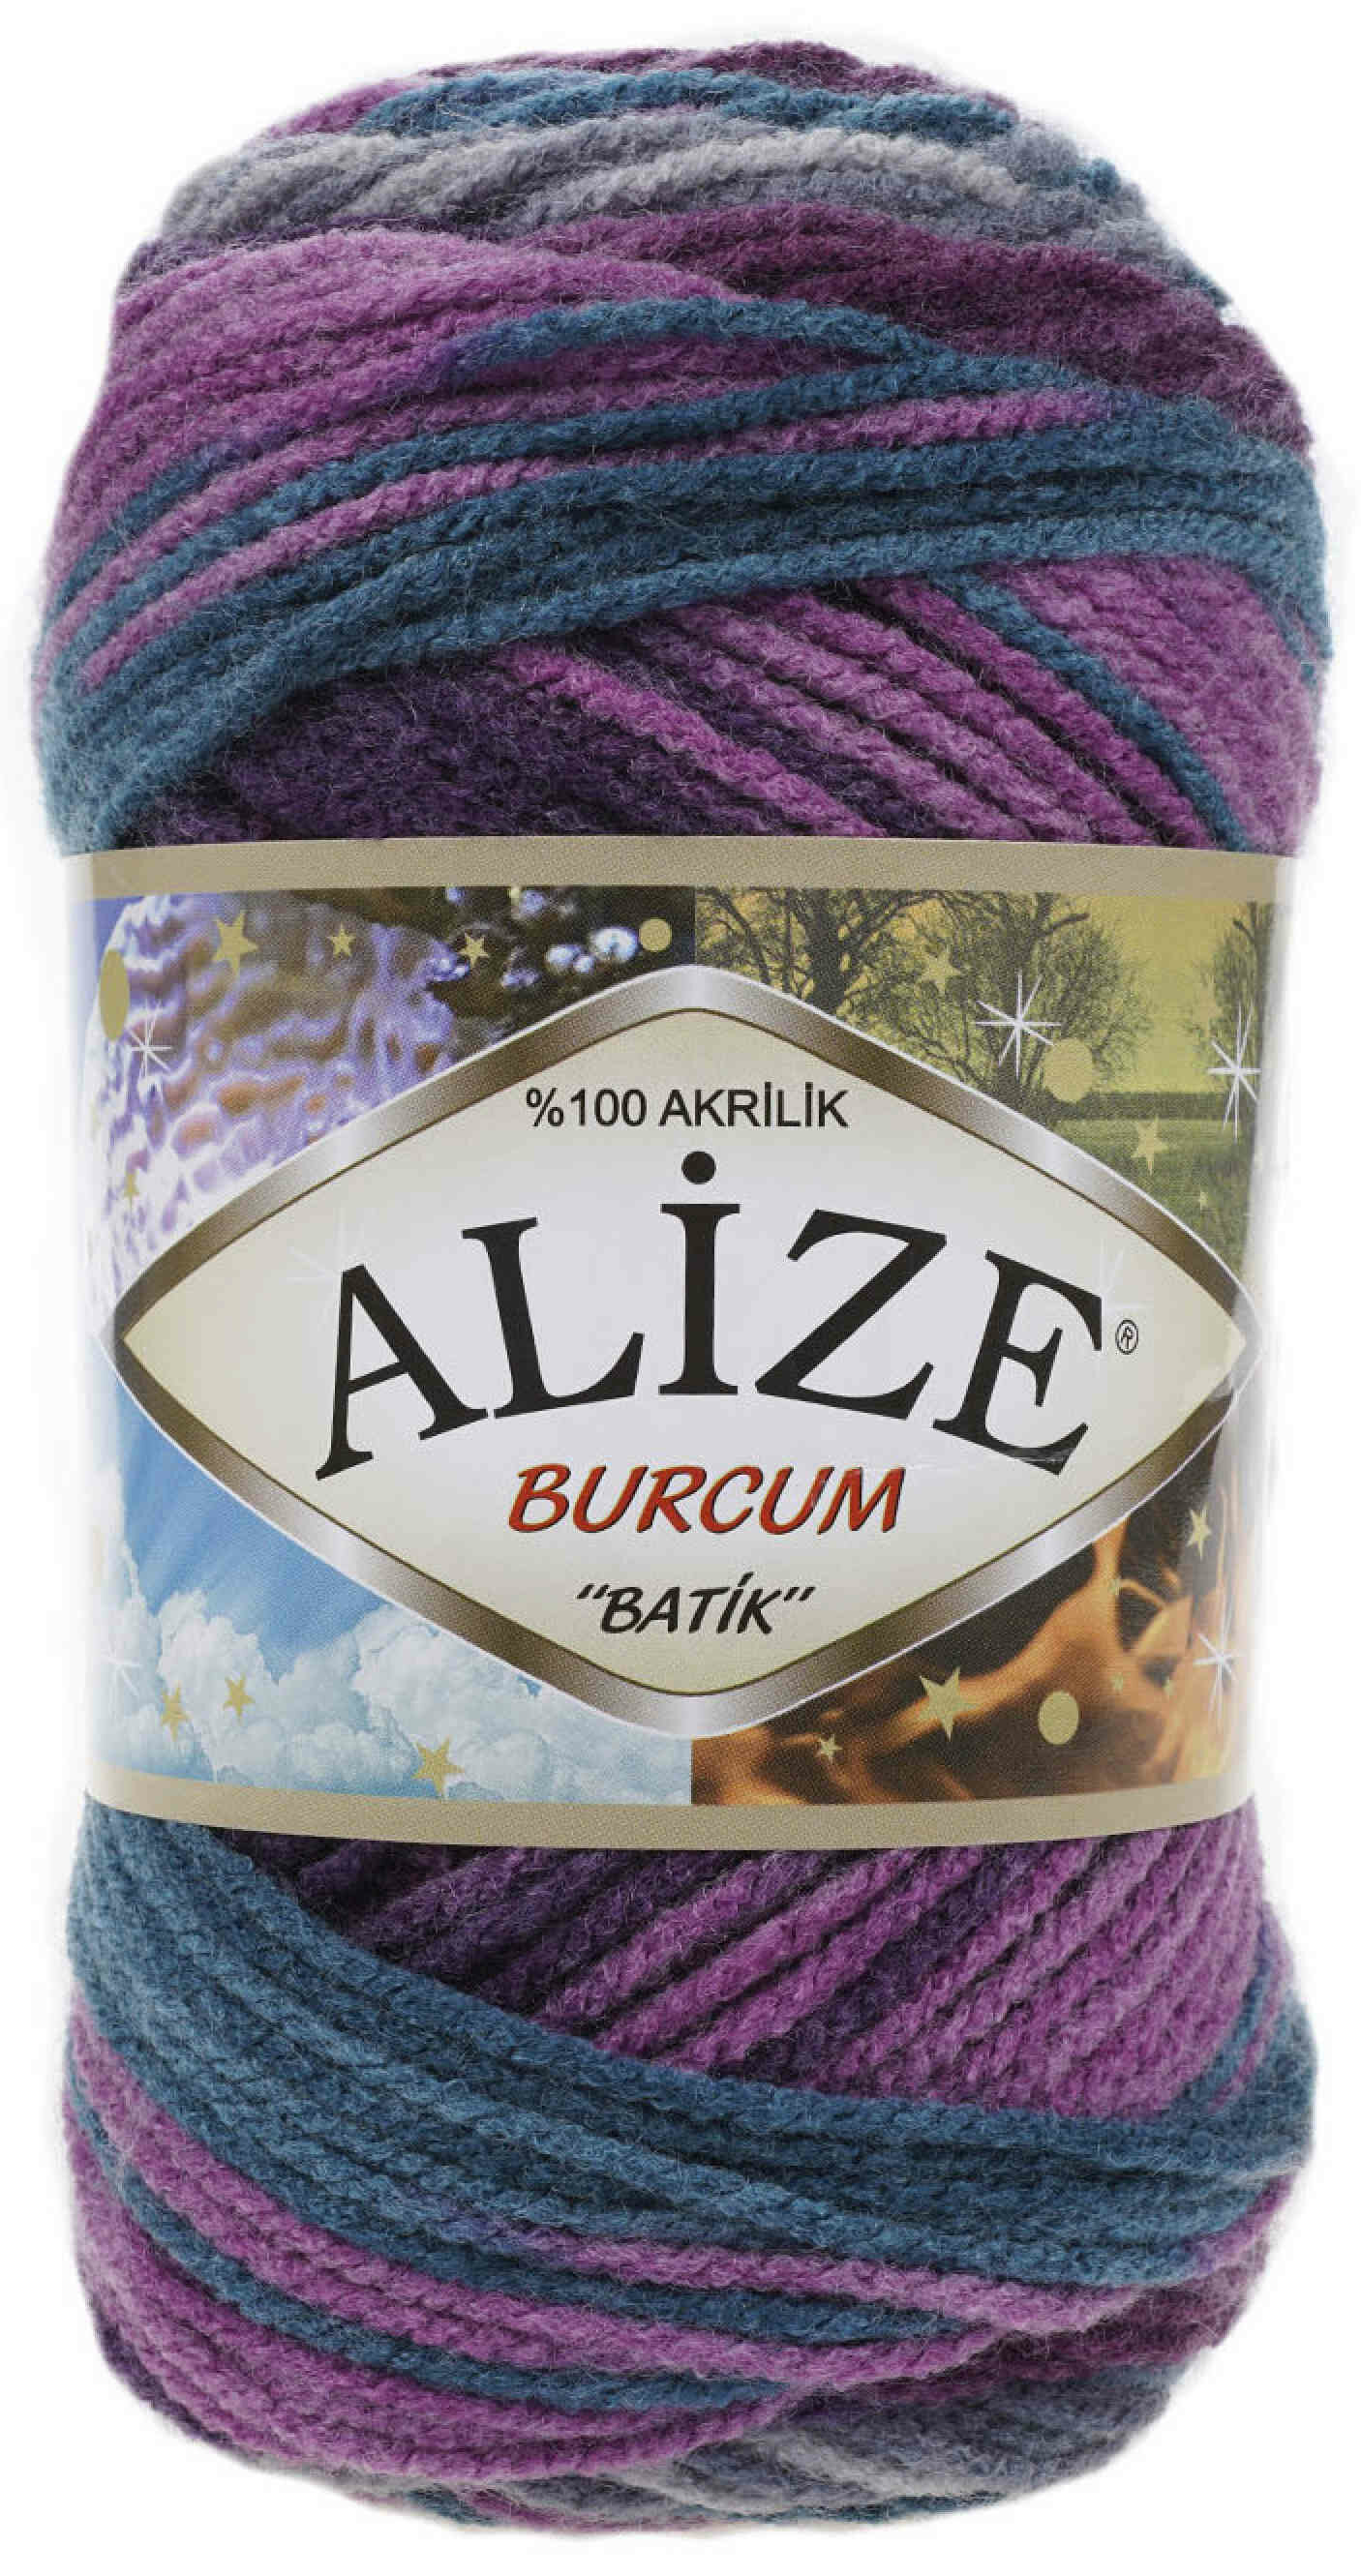 Пряжа Alize Burcum Batik темно-бирюзовый-бордовый-лиловый-серый (3366), 100%акрил, 210м, 100г, 1шт